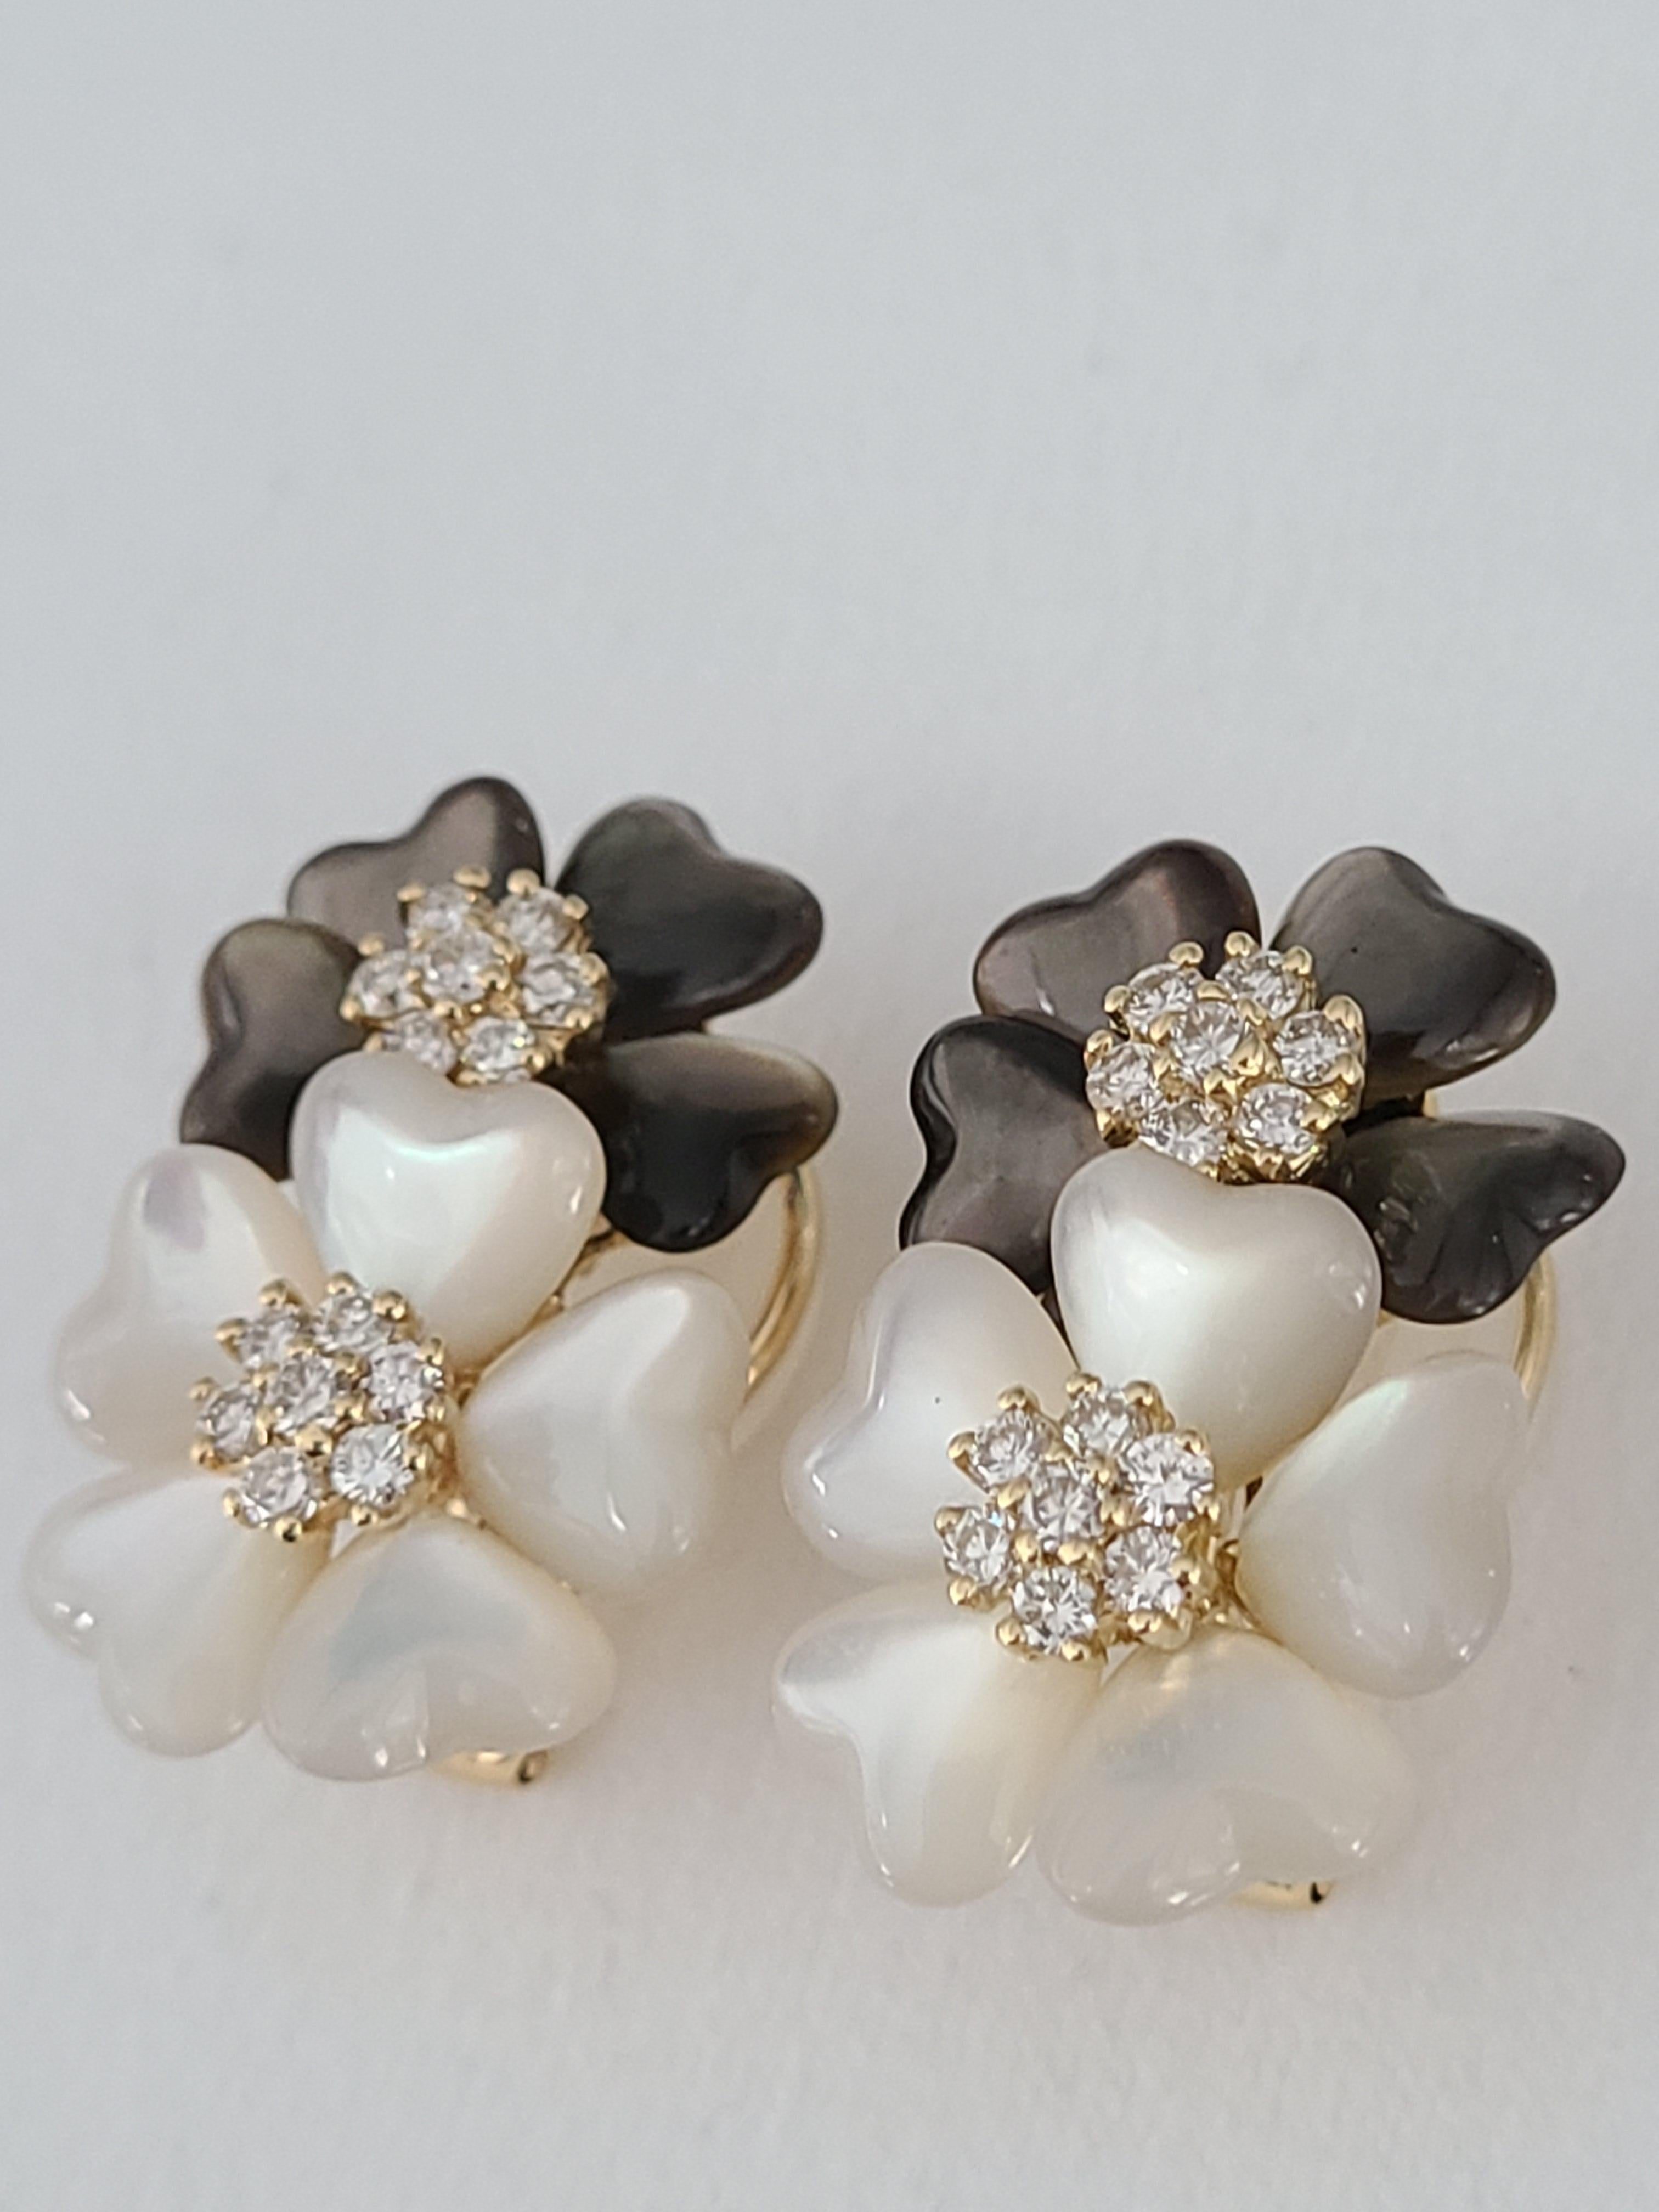 Eine schöne und wunderschöne Shell Ohrringe in 18k Gold mit Diamanten gemacht. Das Gewicht der Diamanten in den Ohrringen beträgt 0,88 Karat. Das Bruttogewicht der Ohrringe beträgt 13,6 Gramm. Abmessungen der Ohrringe in cm 2,5 x 1,5 x 0,5 (LXBXT). 